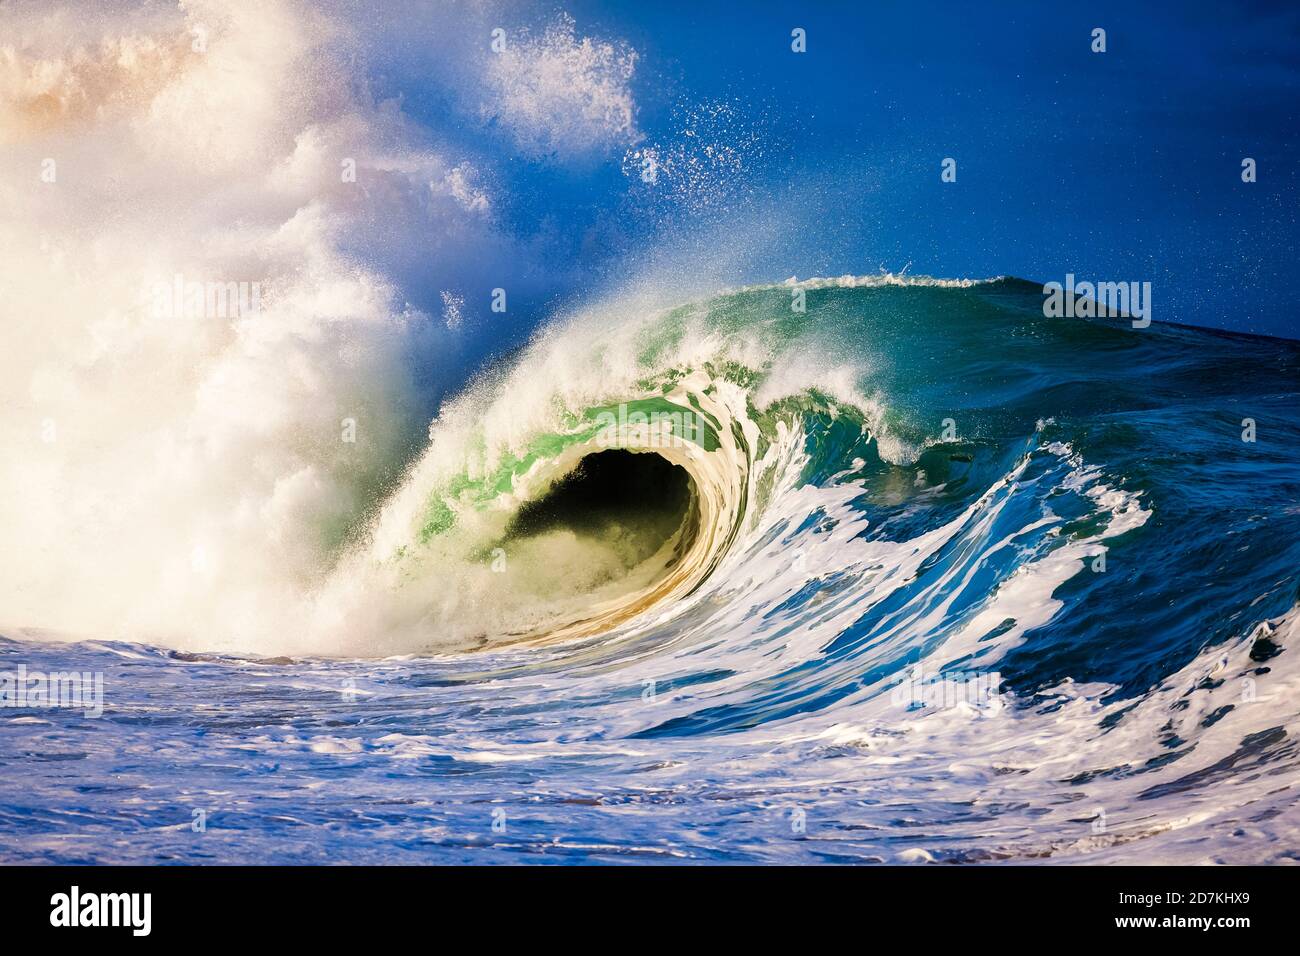 Énorme vague de l'océan se brisant violemment au rivage, créant un mur d'eau, la rupture du rivage, Waimea Bay, Oahu, Hawaii, États-Unis, Océan Pacifique Banque D'Images